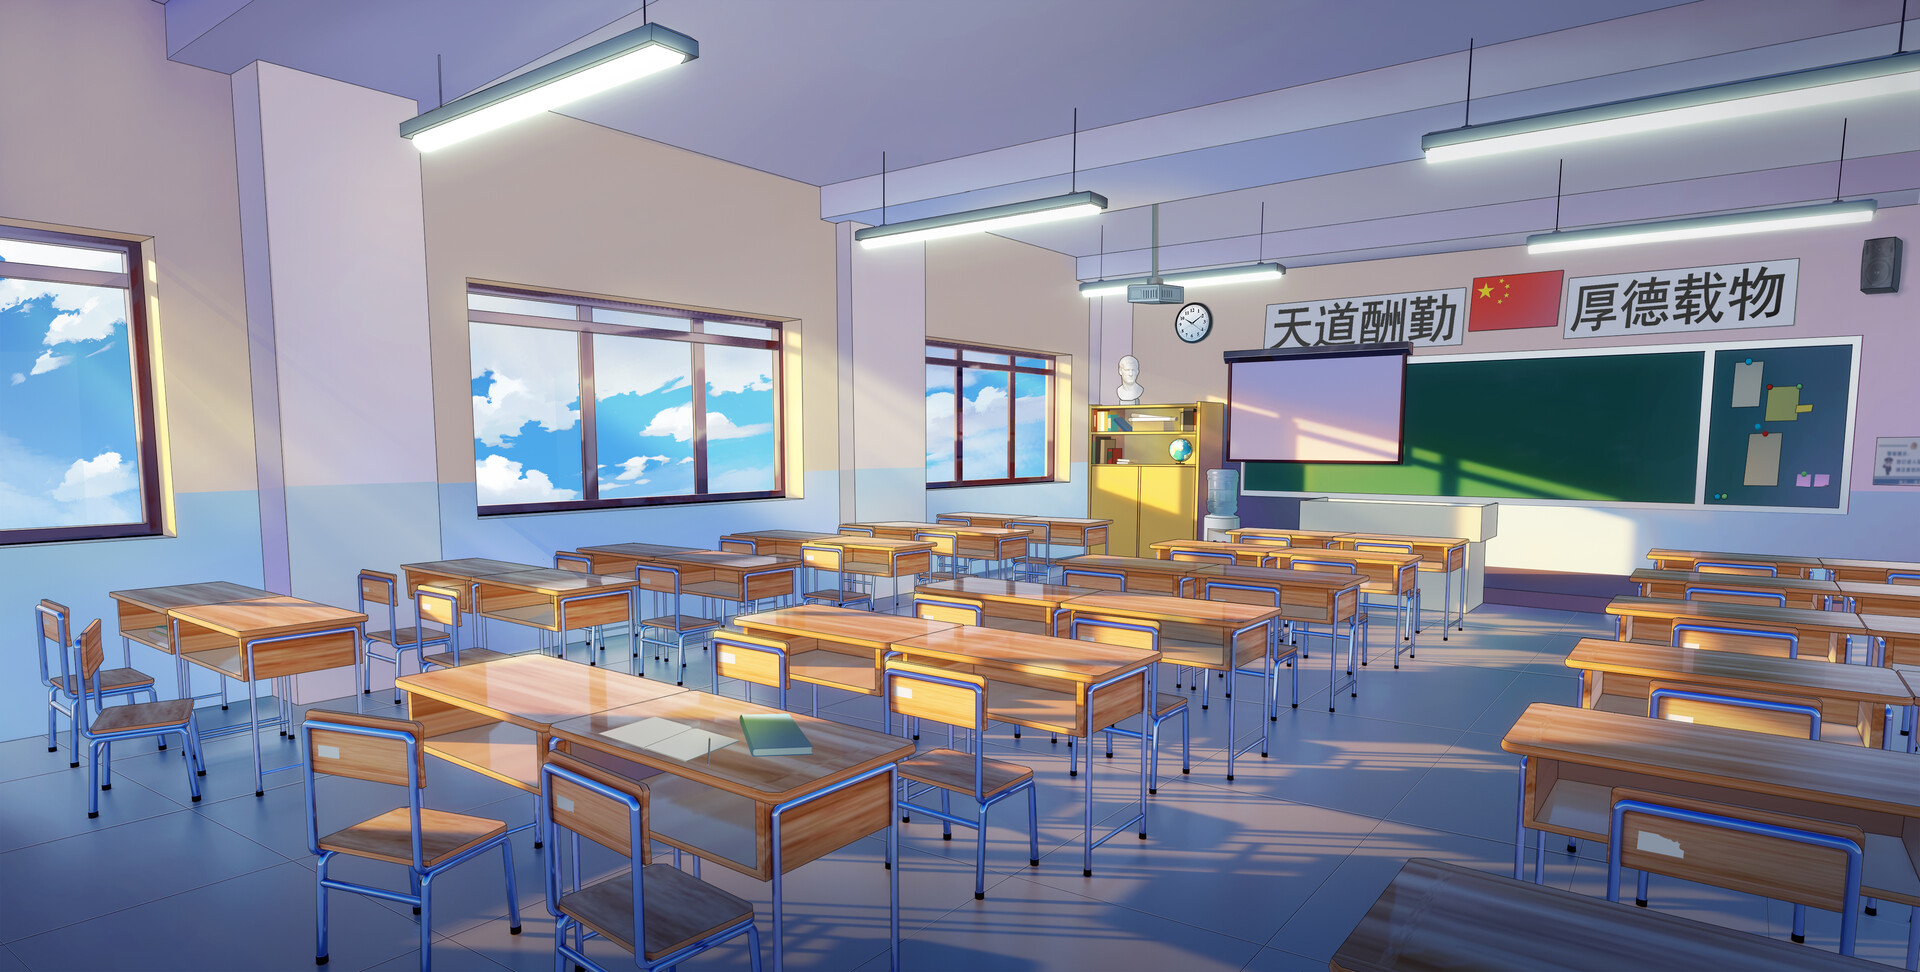 ArtStation - 二次元教室室内